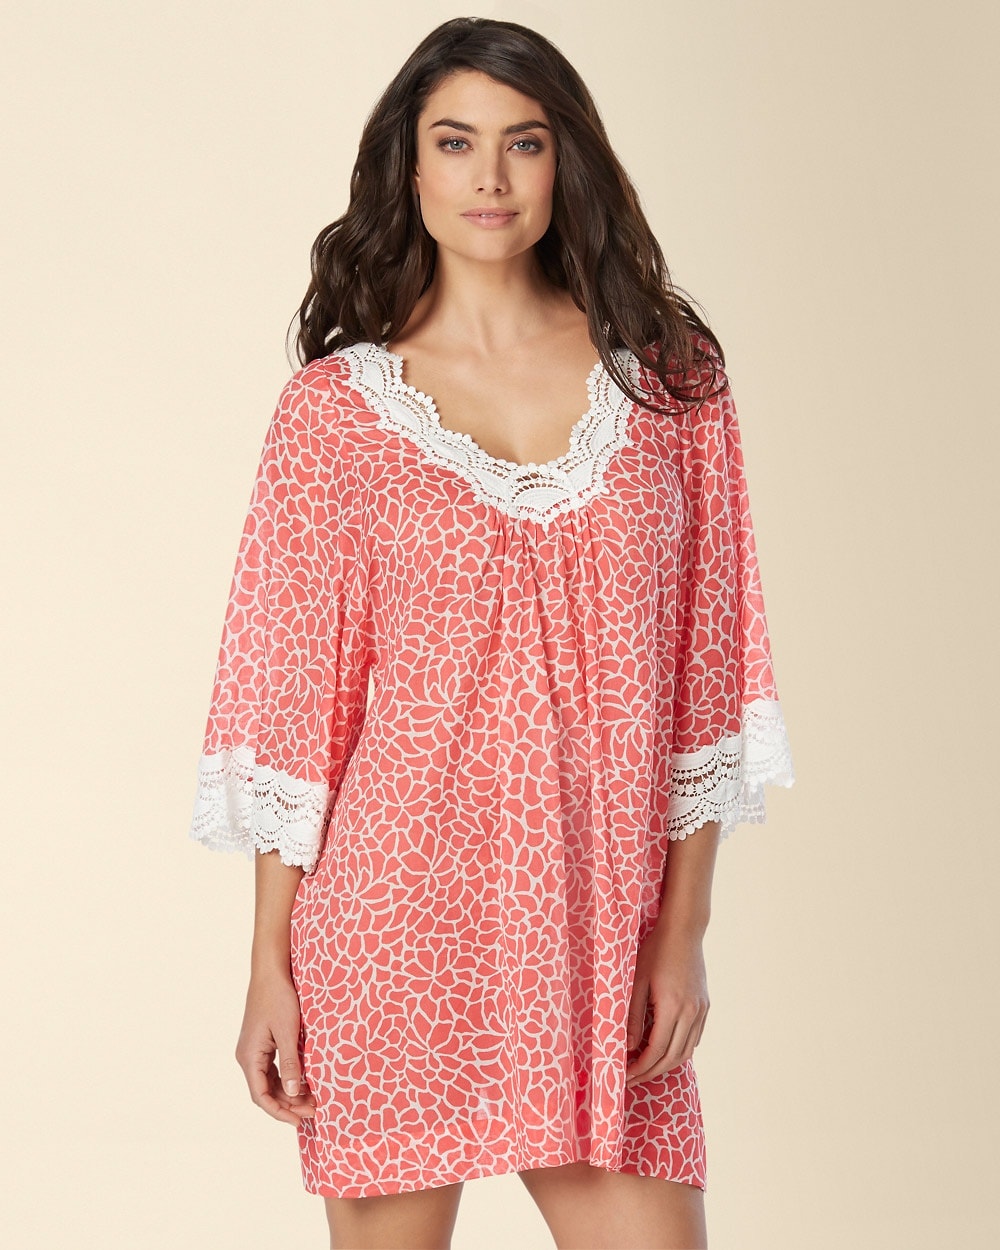 Oscar de la Renta Mosaic Petals Short Cotton Nightgown Apricot Print